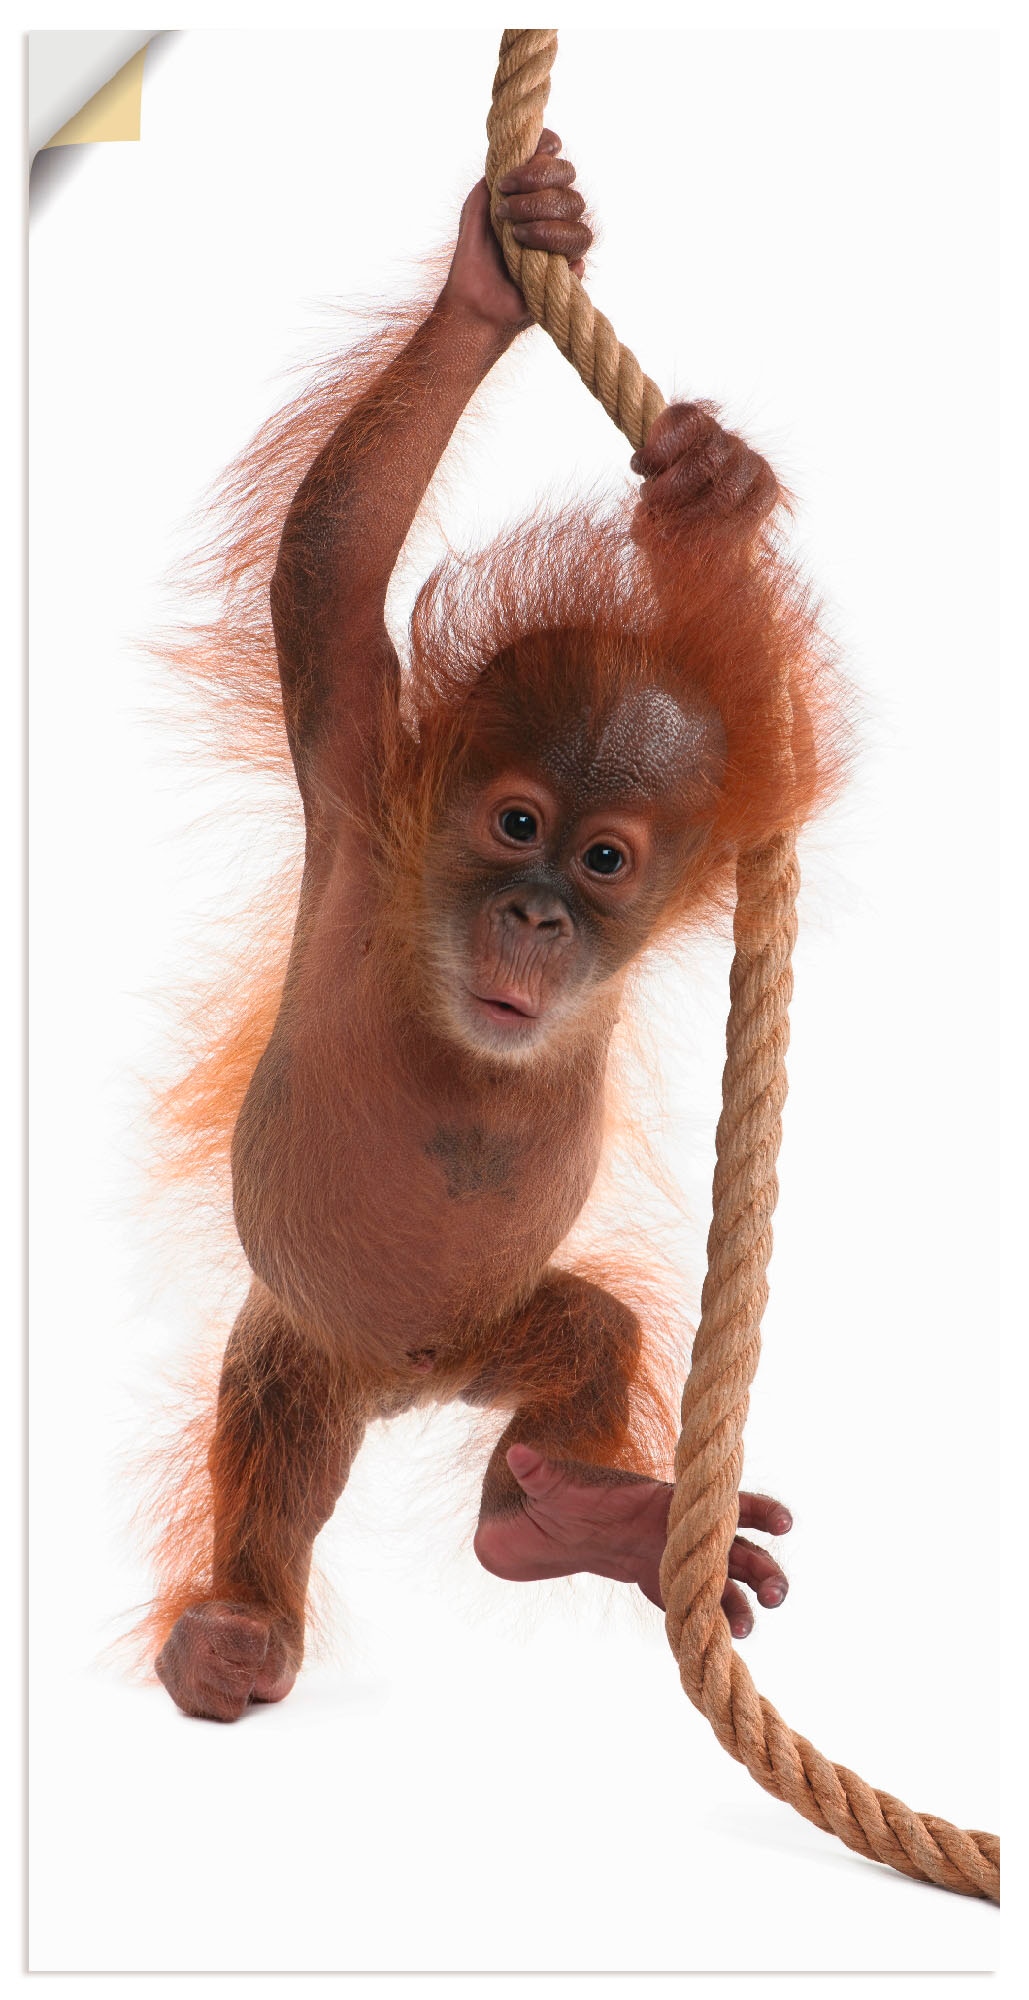 Artland Wandbild »Baby Orang Utan hängt am Seil I«, Wildtiere, (1 St.), als Alubild, Leinwandbild, Wandaufkleber oder Poster in versch. Größen